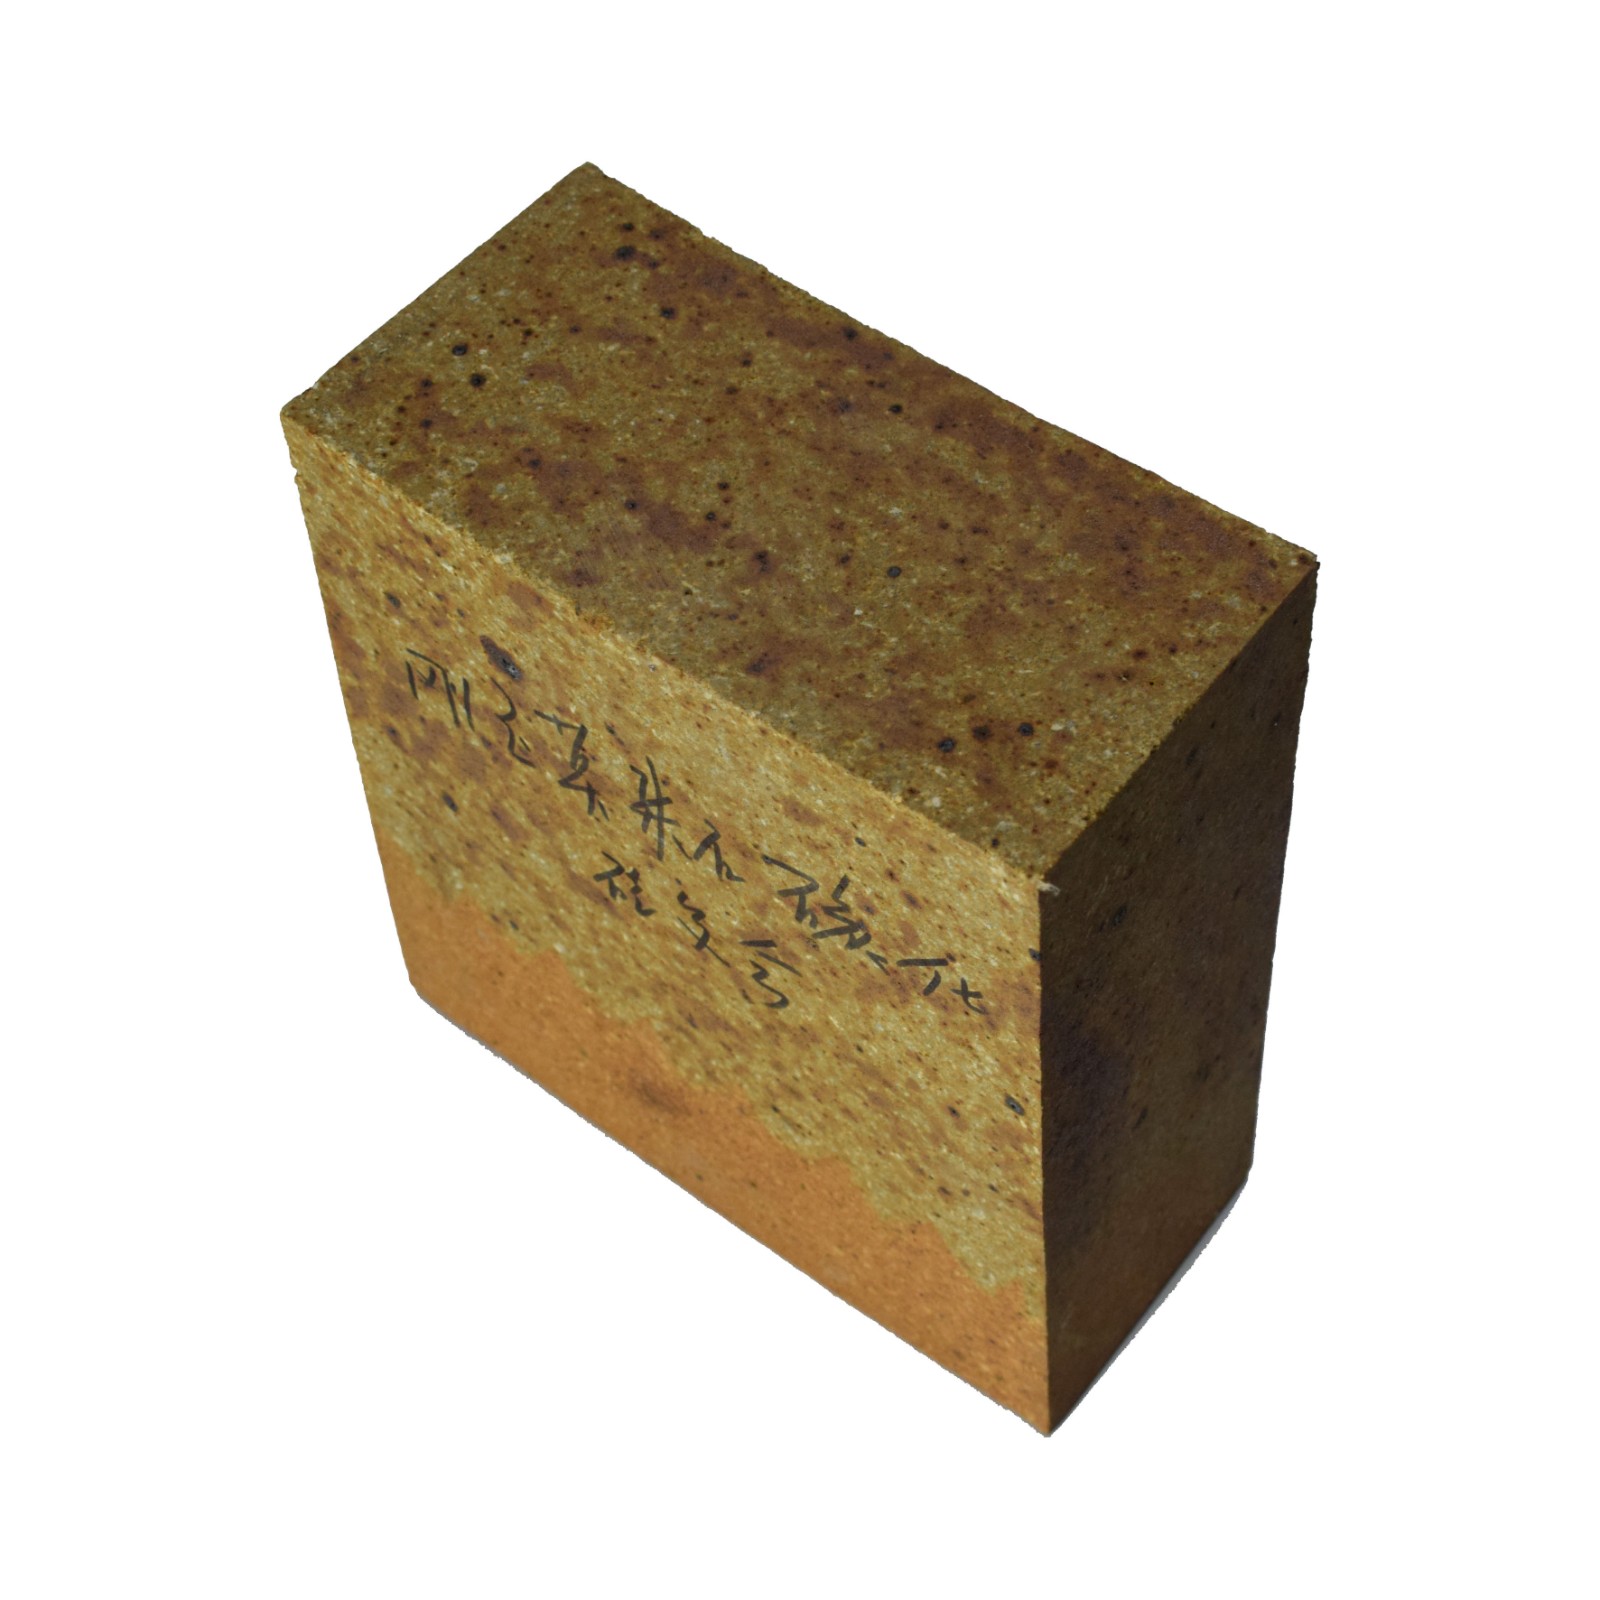 价 格:6800  刚玉碳化硅砖是以碳化硅(sic)和优质刚玉为主要原料